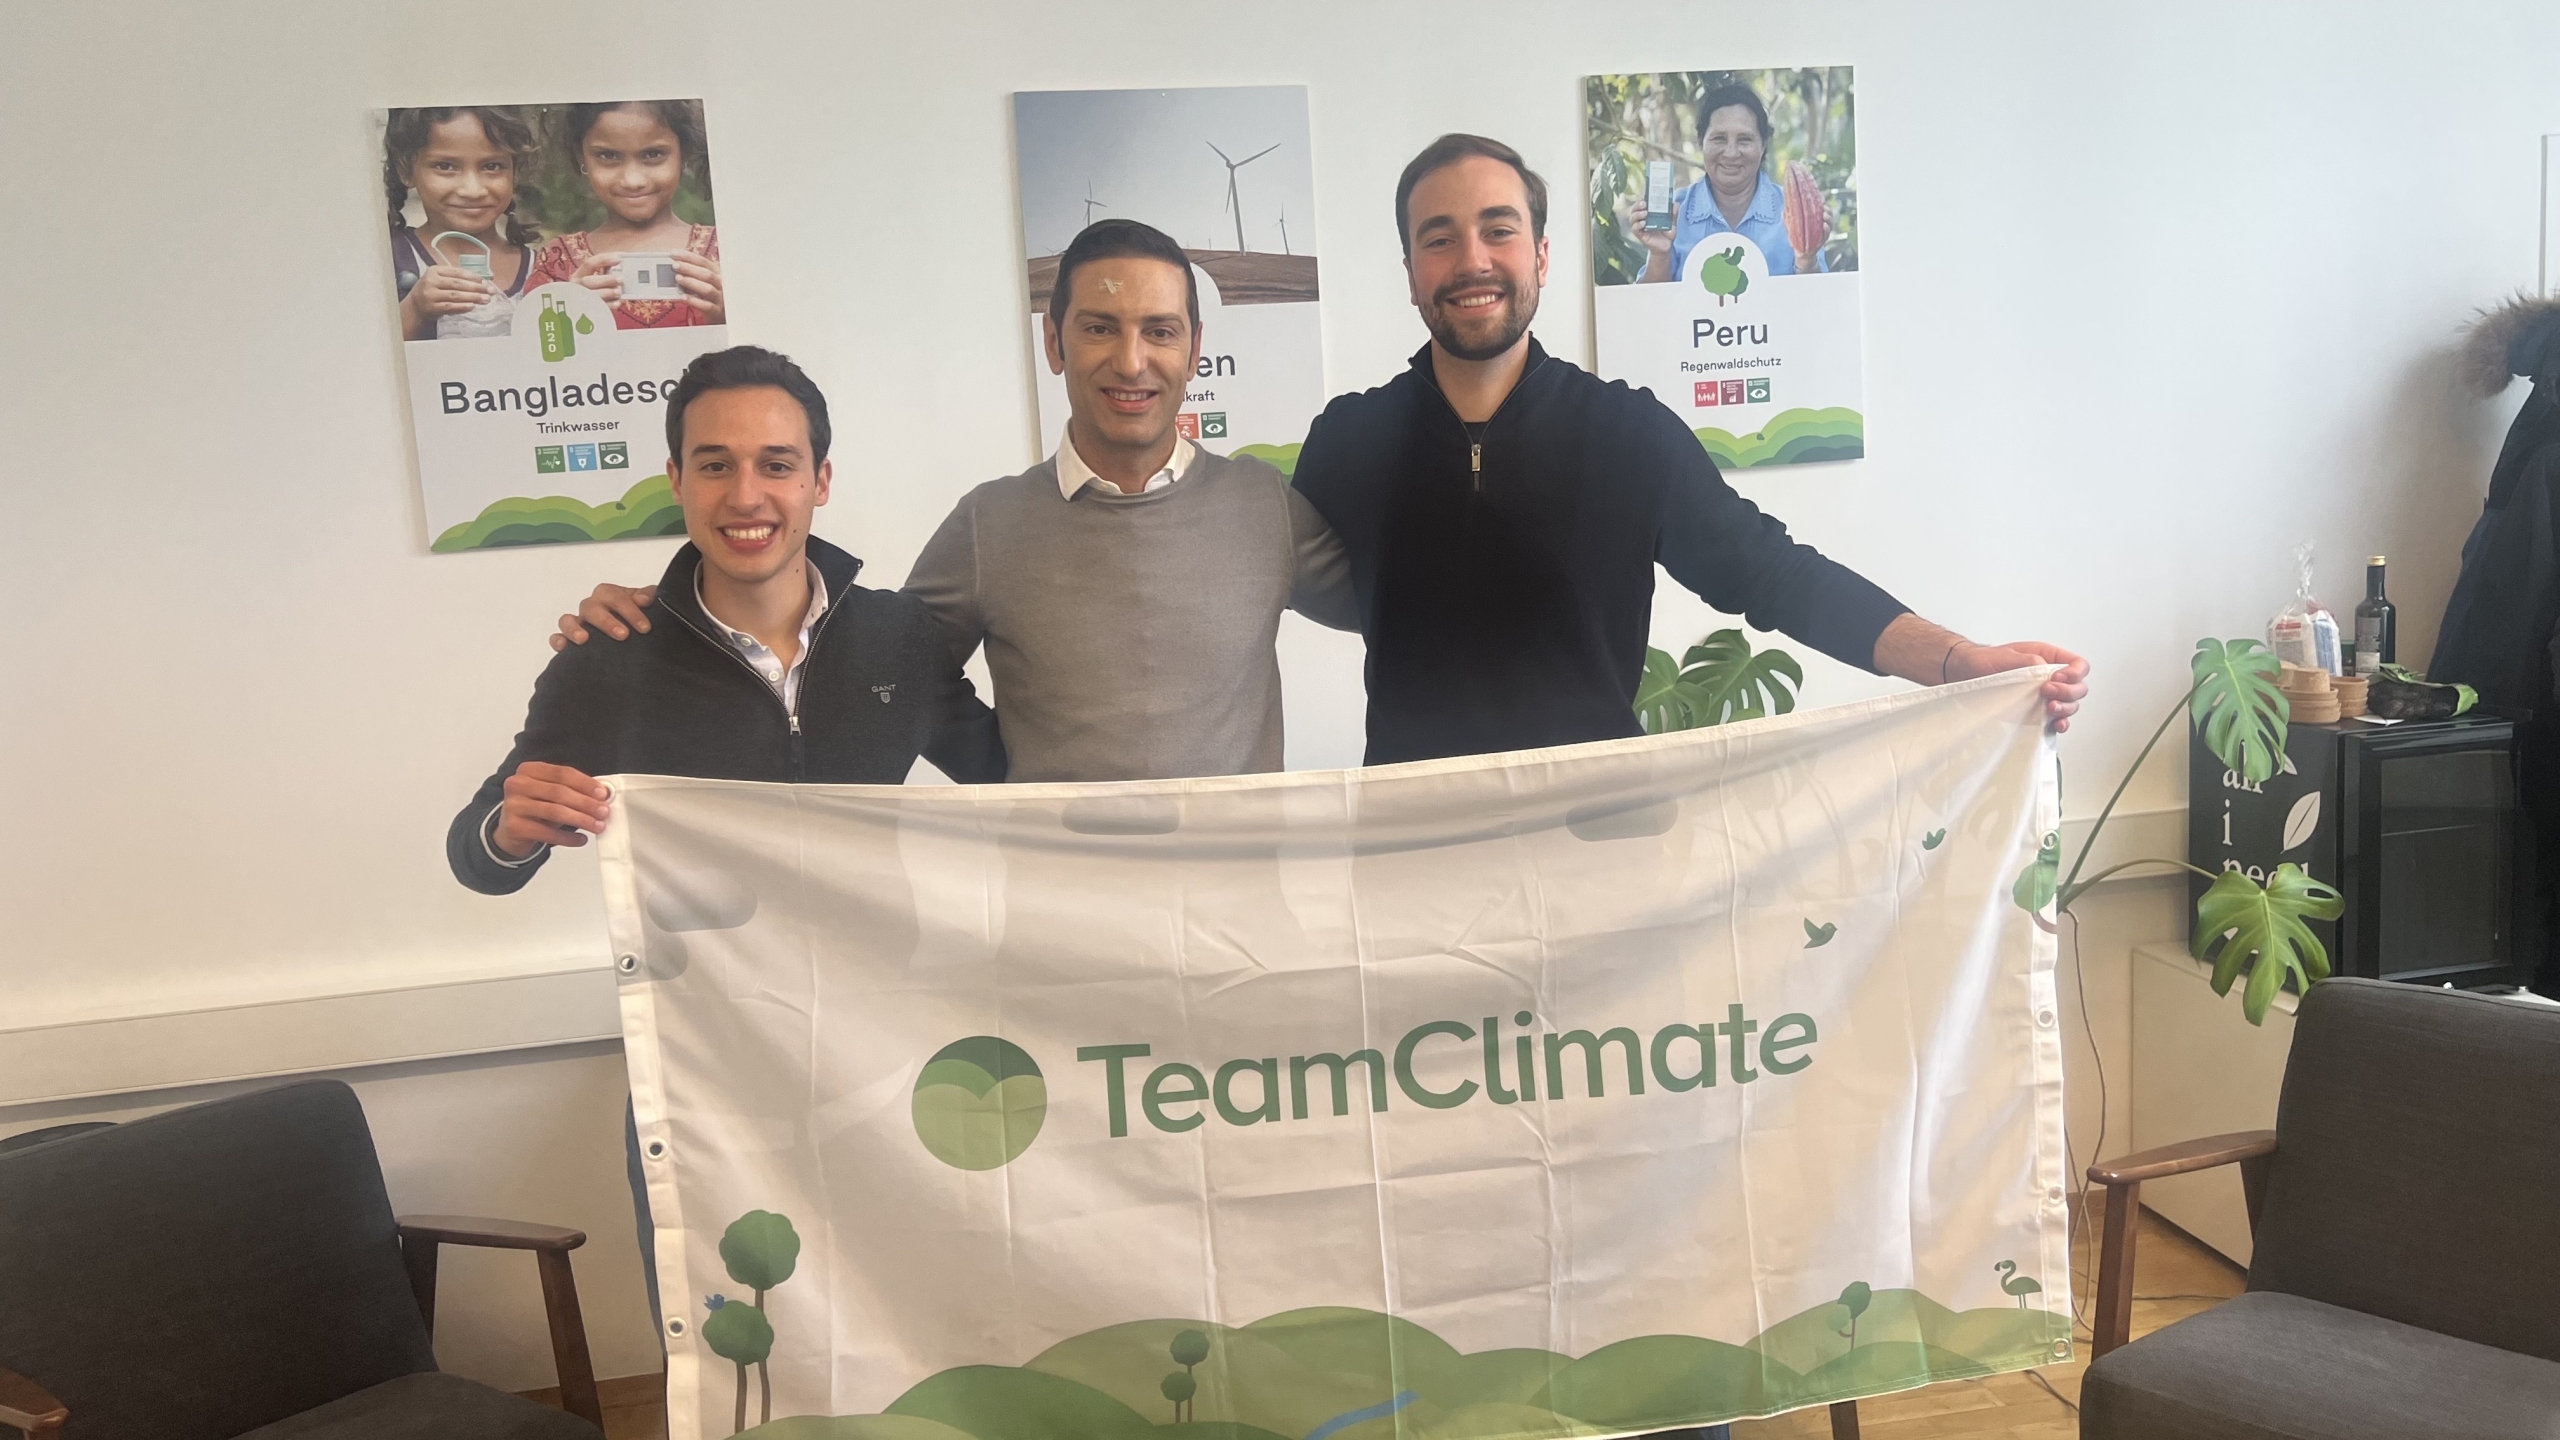 ClimateTrade mua lại TeamClimate để cung cấp bù đắp carbon dựa trên đăng ký